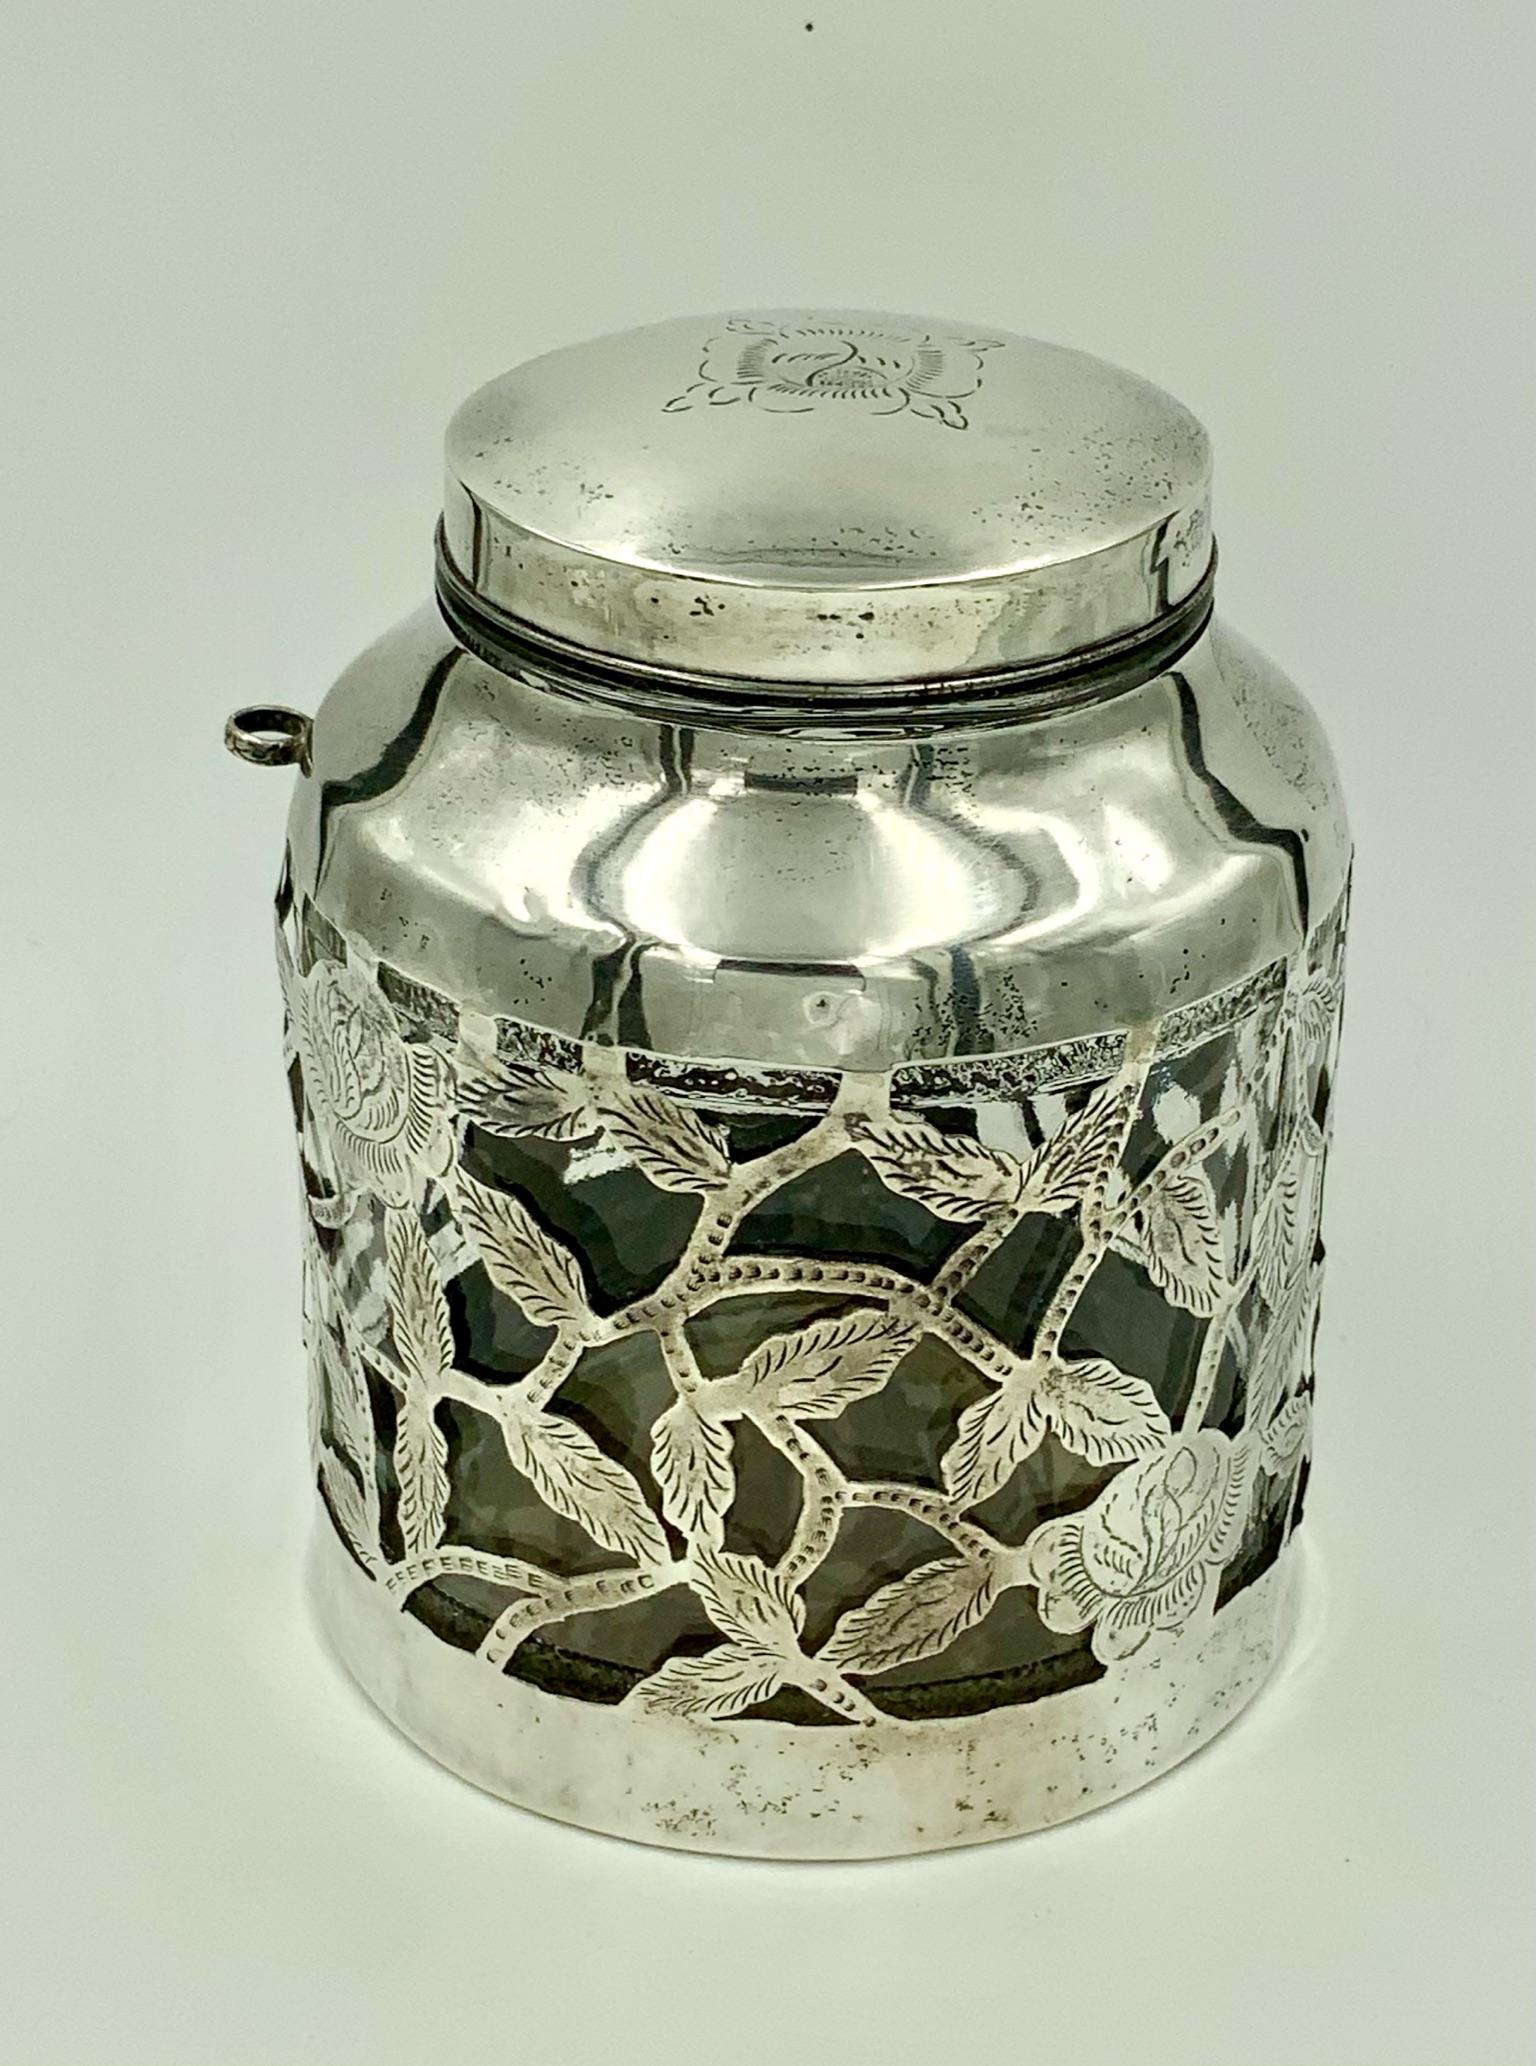 Jarre vintage mexicaine en verre à décor floral gravé avec porte-cuillère. Cette magnifique jarre a été fabriquée au Mexique et présente un magnifique manchon en argent avec un motif floral gravé. Les manchons enveloppent un bocal en verre. La pièce